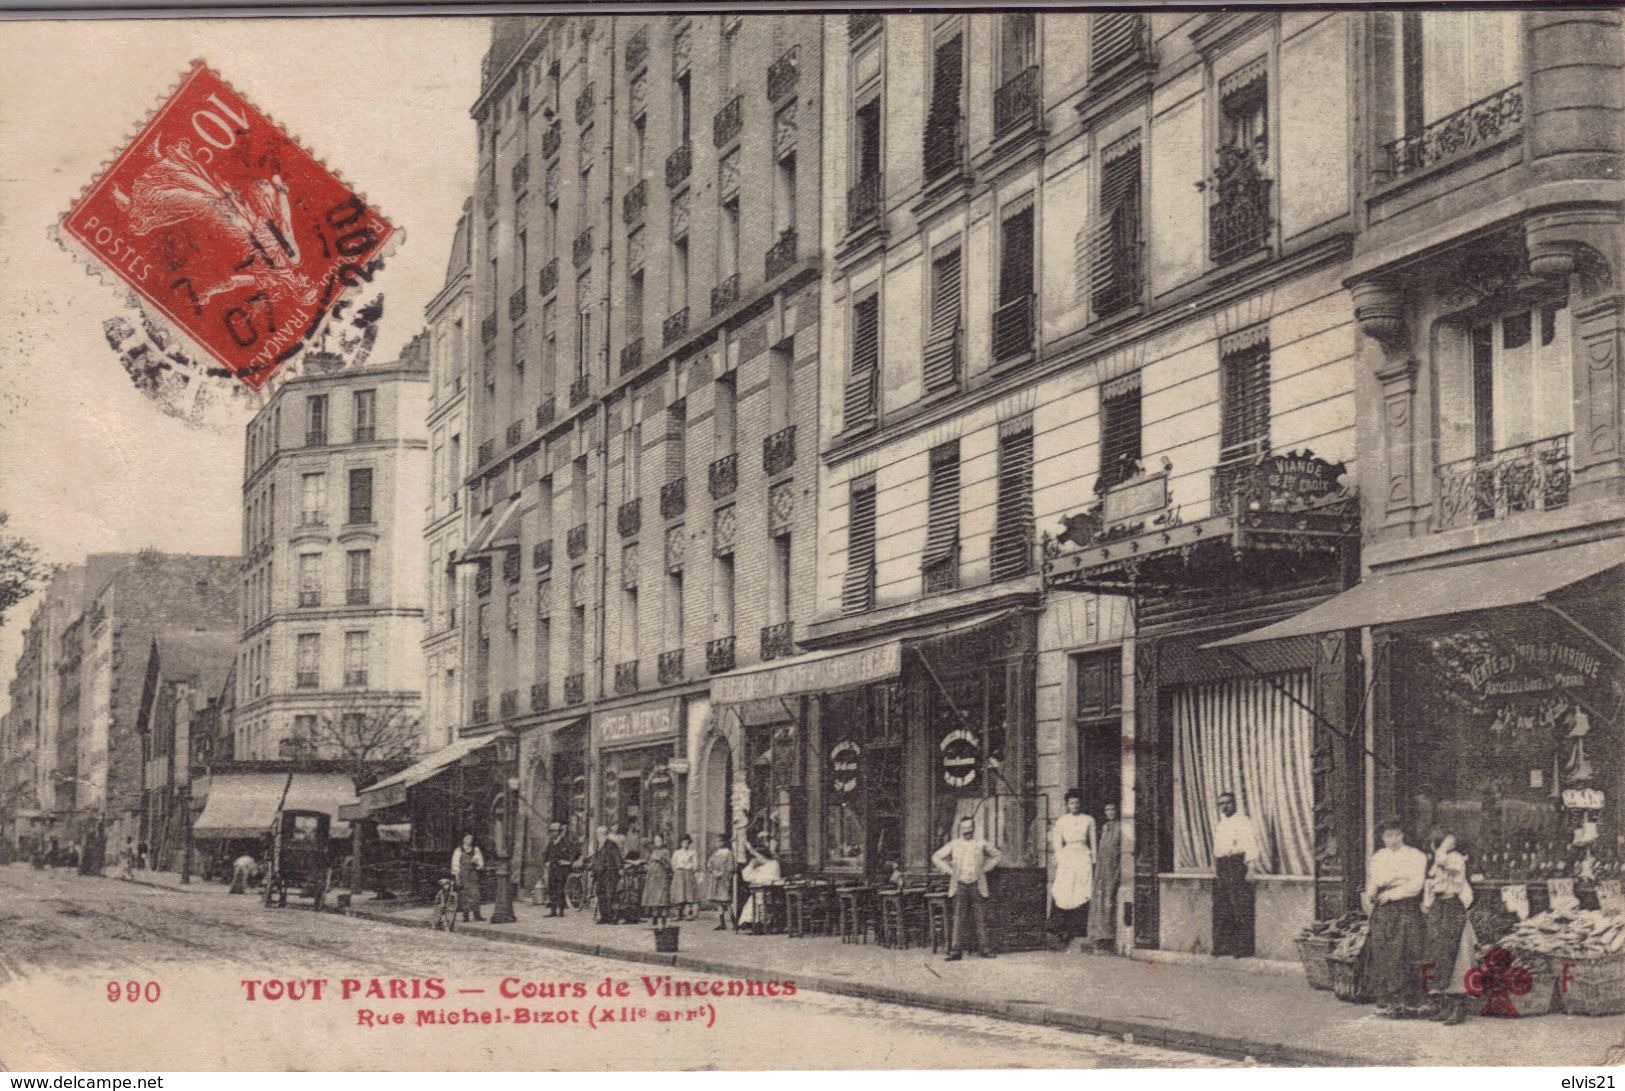 TOUT PARIS 12 ème Cours De Vincennes.Rue Michel Bizot - Distrito: 12